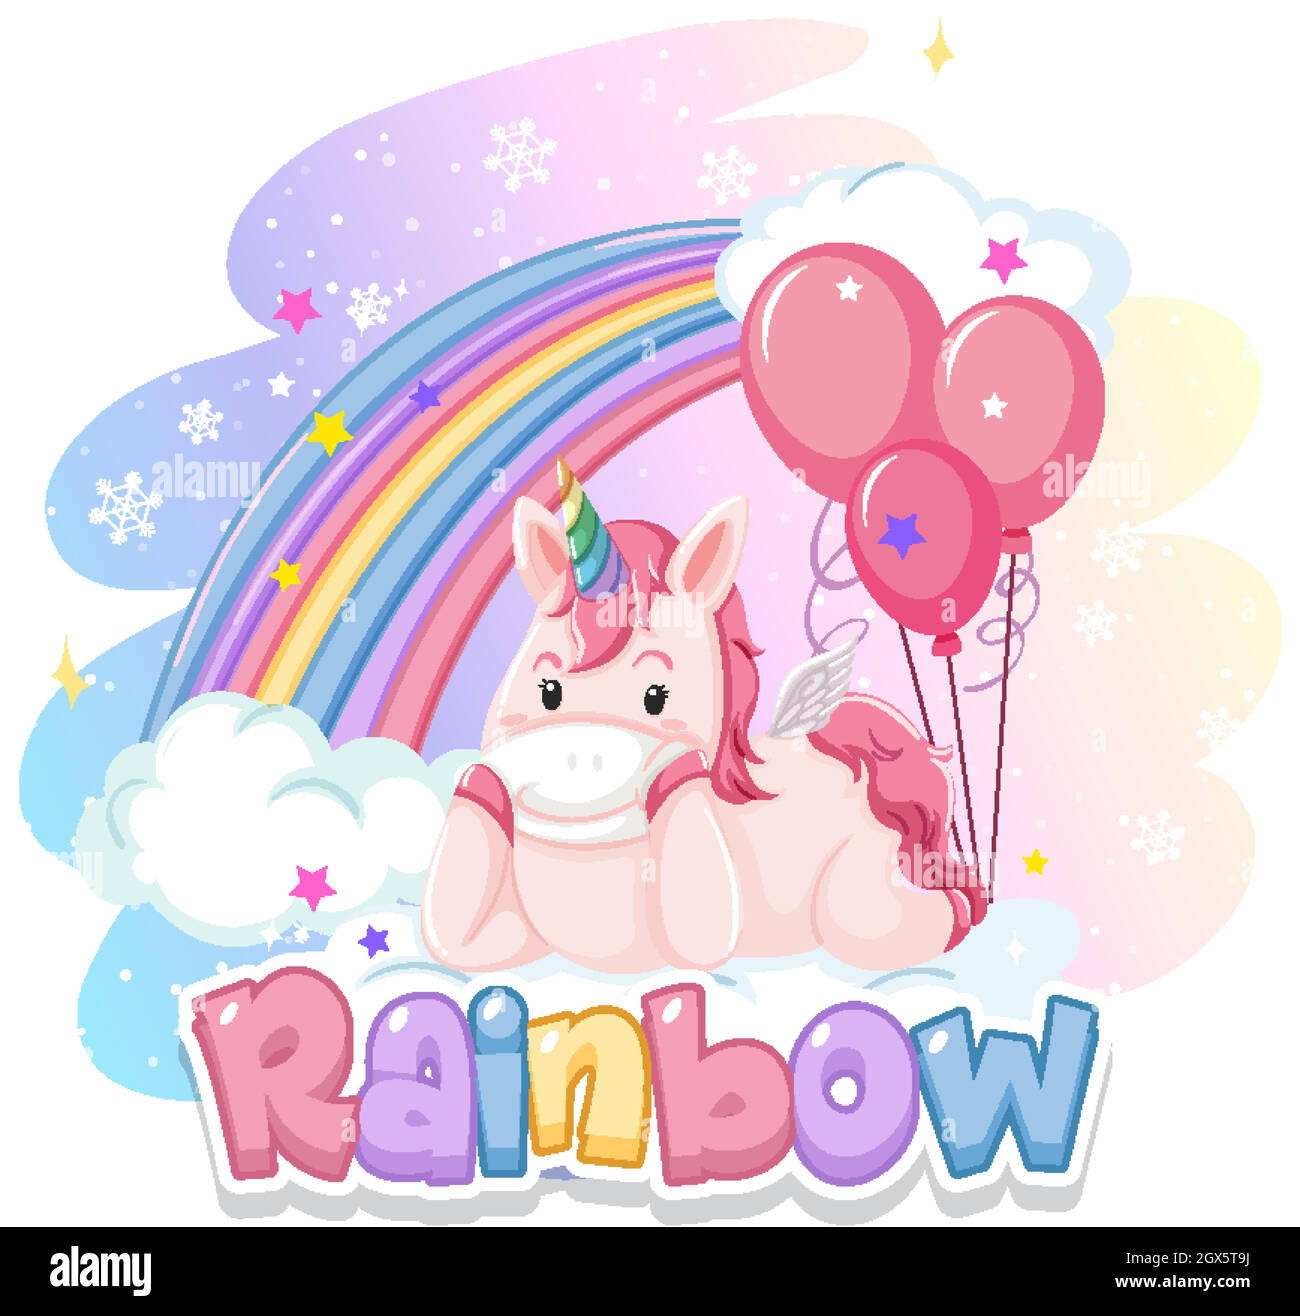 Bạn muốn sở hữu một mẫu font mới tươi sáng, đầy sắc màu? Rainbow font kết hợp với unicorn và balloon sẽ là sự lựa chọn hoàn hảo cho bạn. Hãy khám phá và sáng tạo với những ý tưởng độc đáo của bạn.